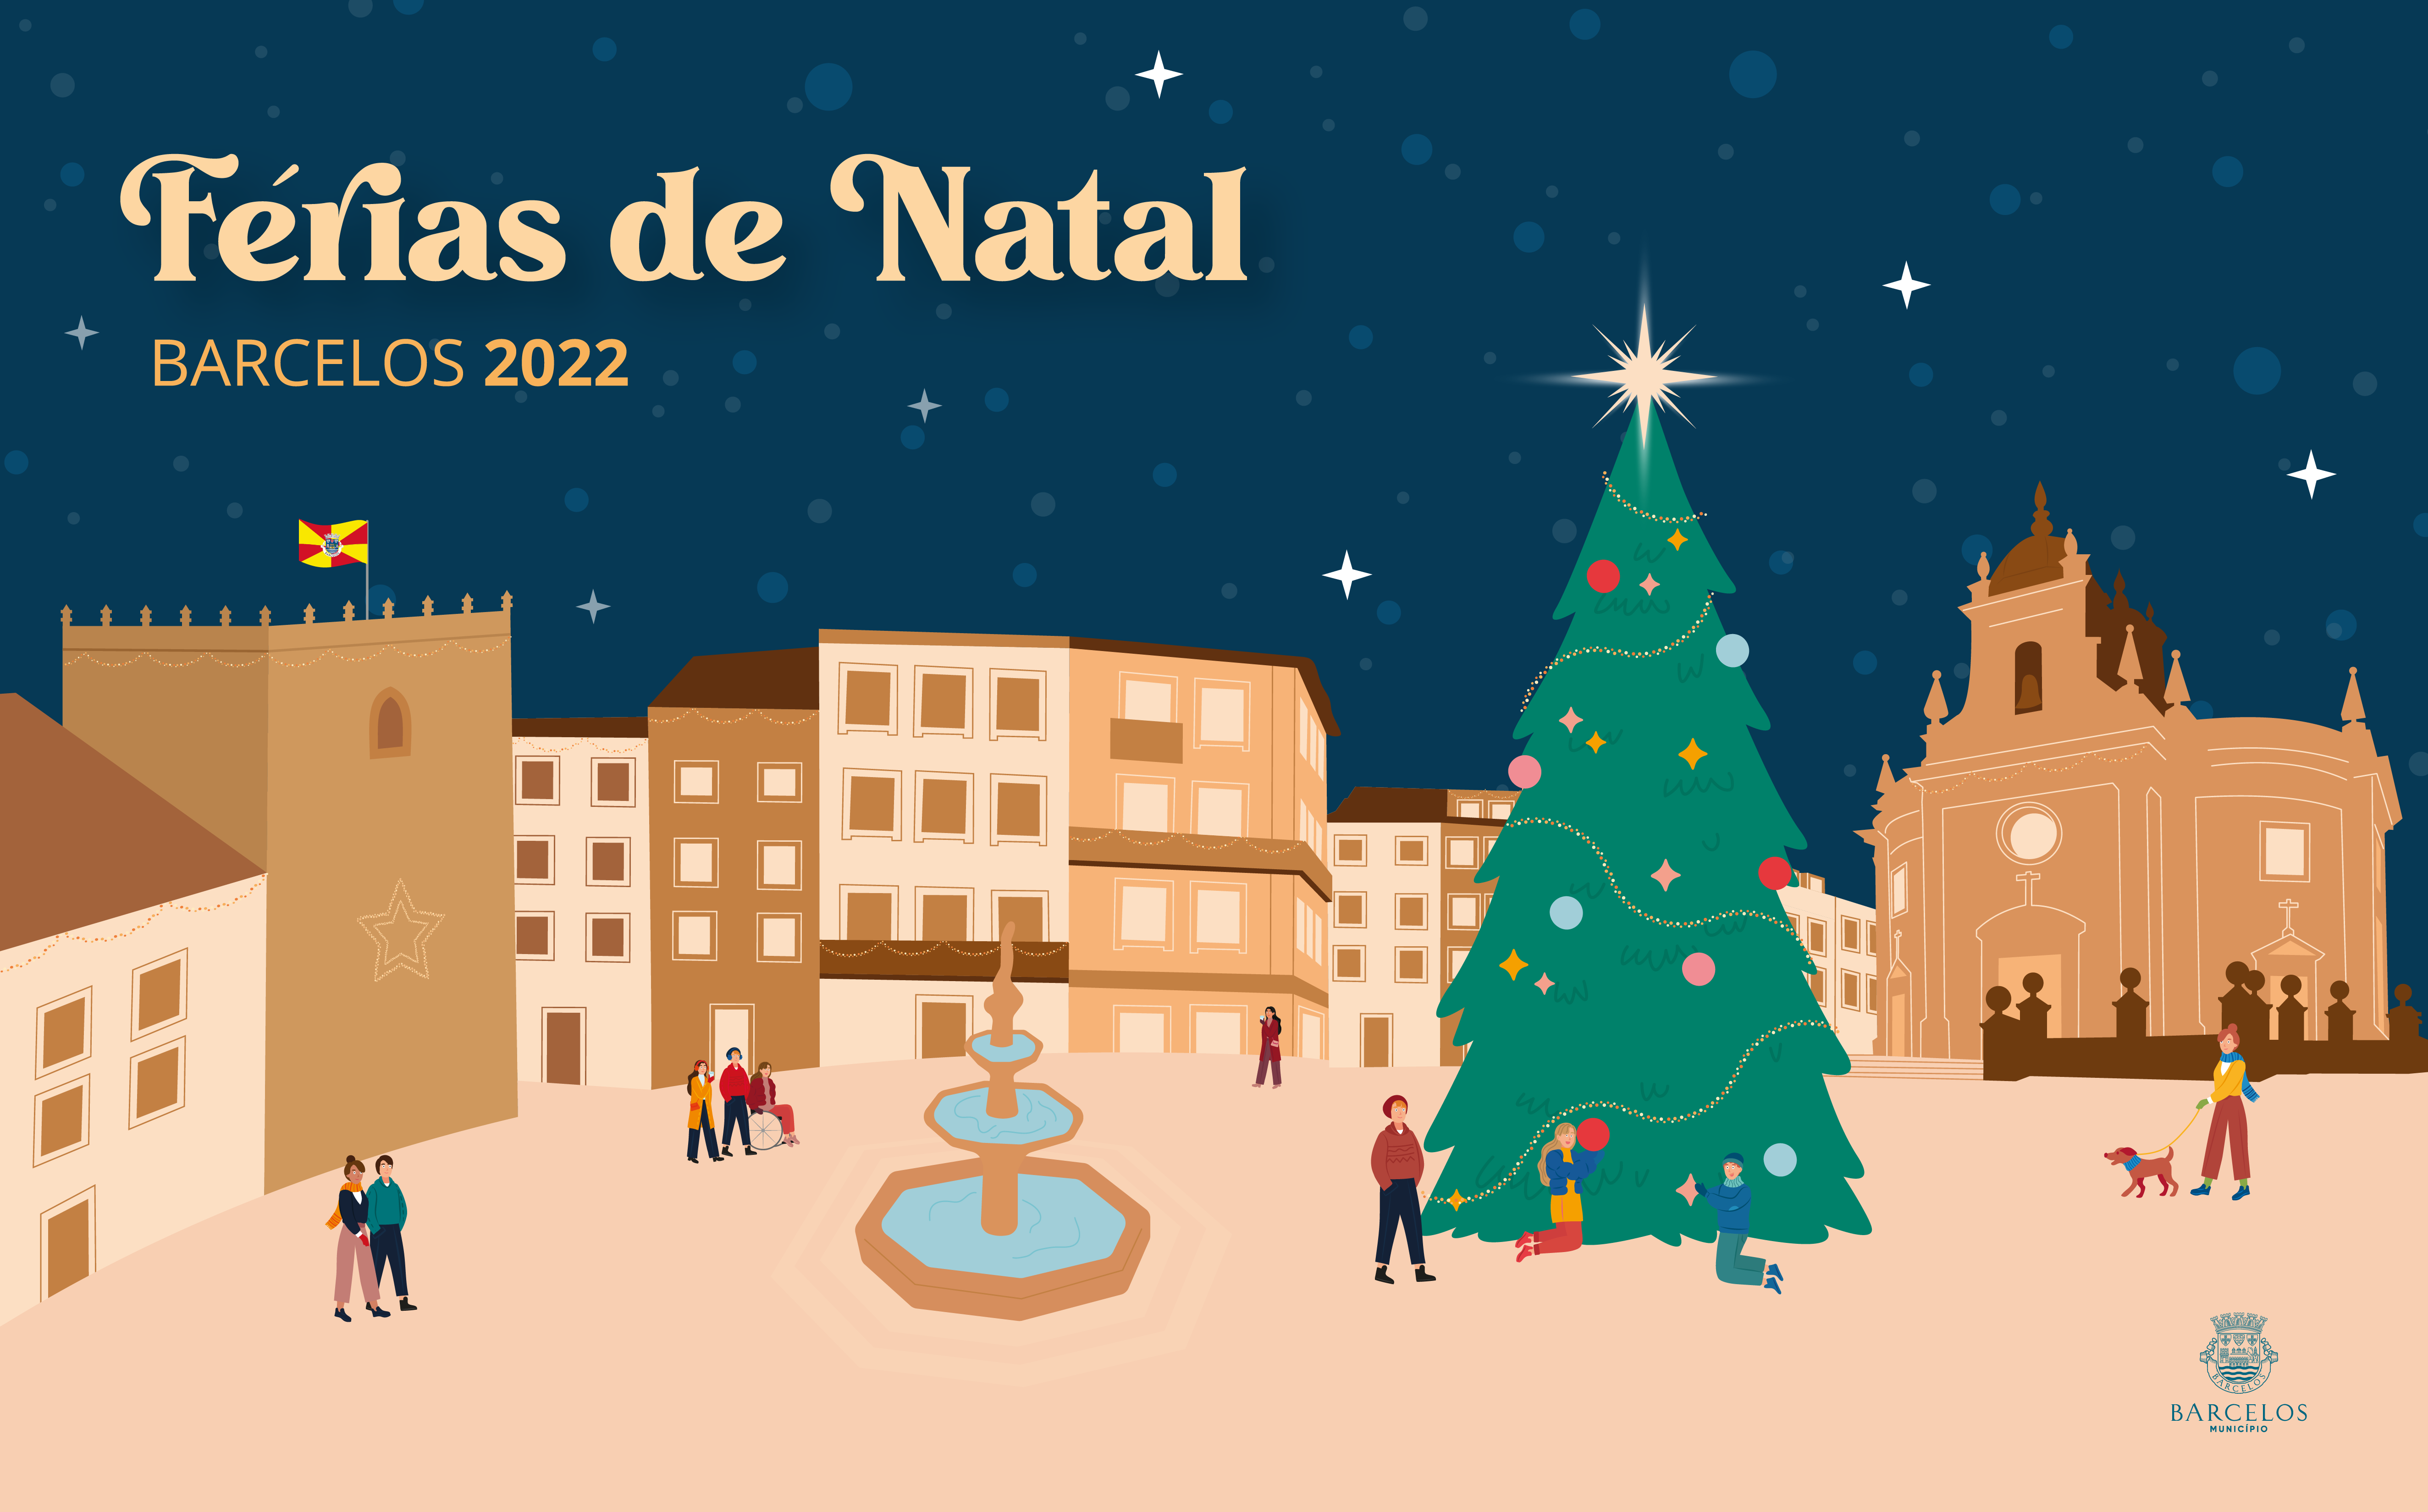 Câmara Municipal de Barcelos promove programa de atividades para crianças e jovens do concelho nas Férias Escolares de Natal